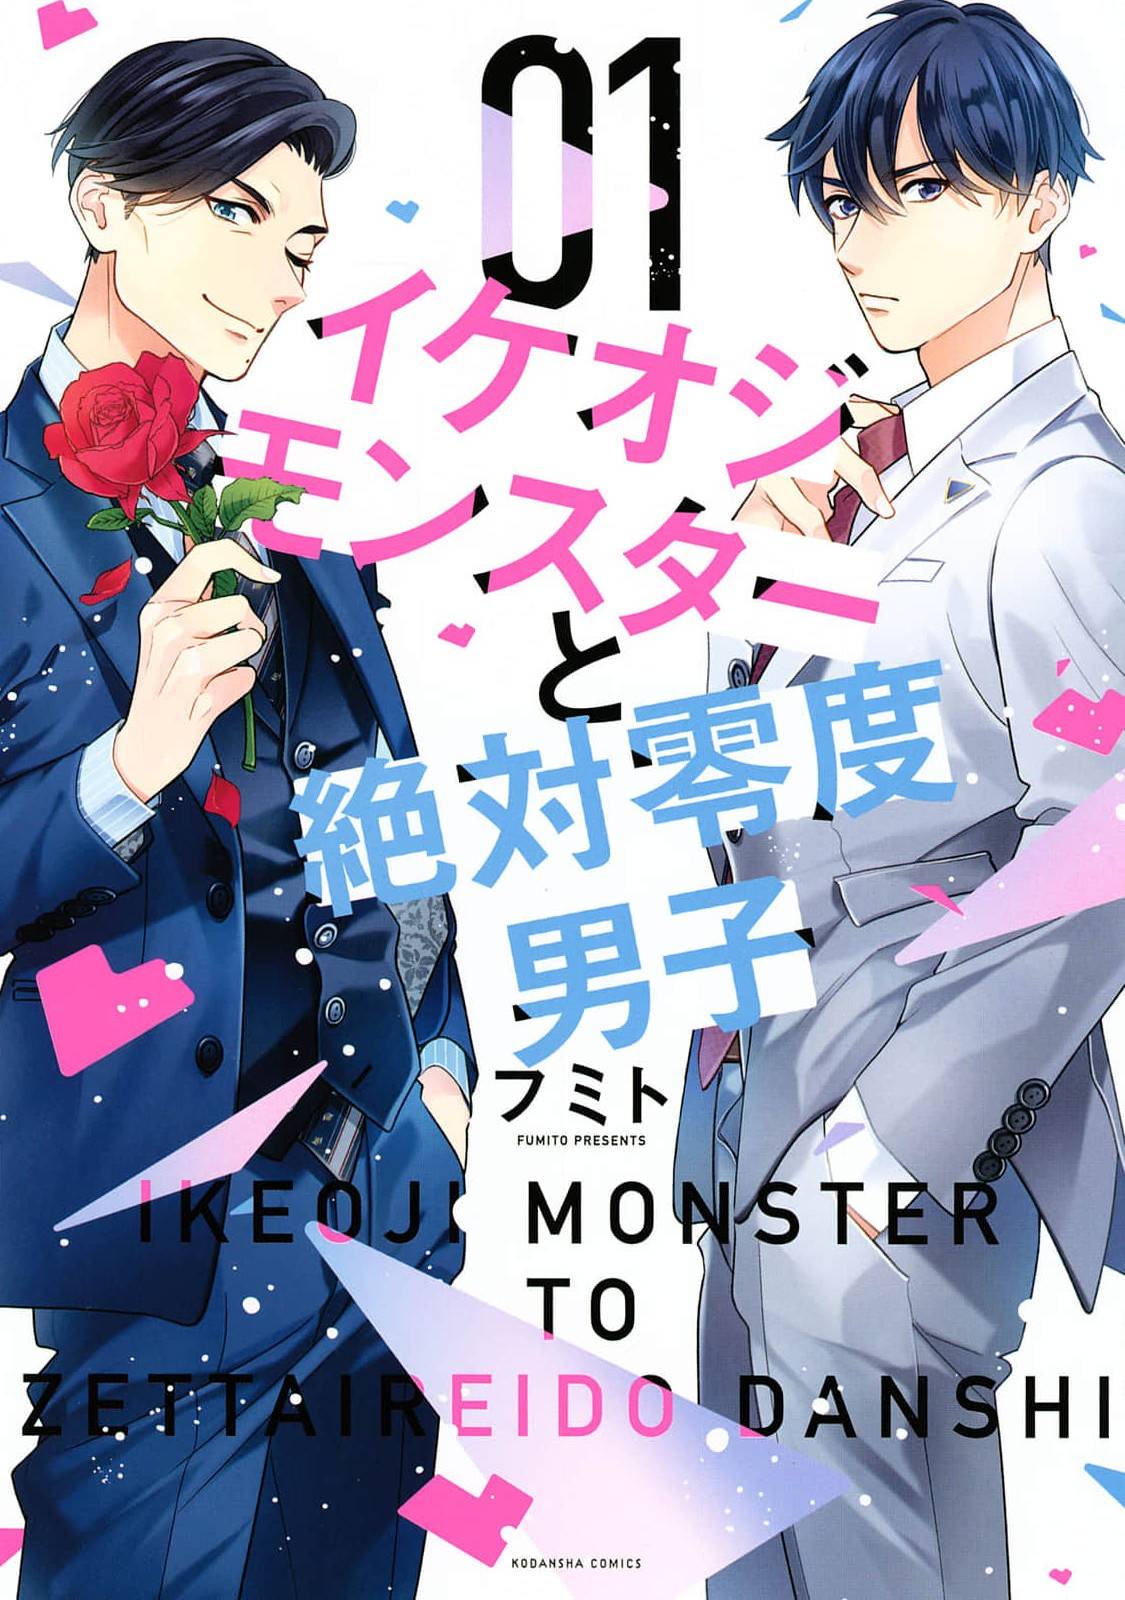 Ikeoji Monster To Zettai Reido Danshi - chapter 4 - #1